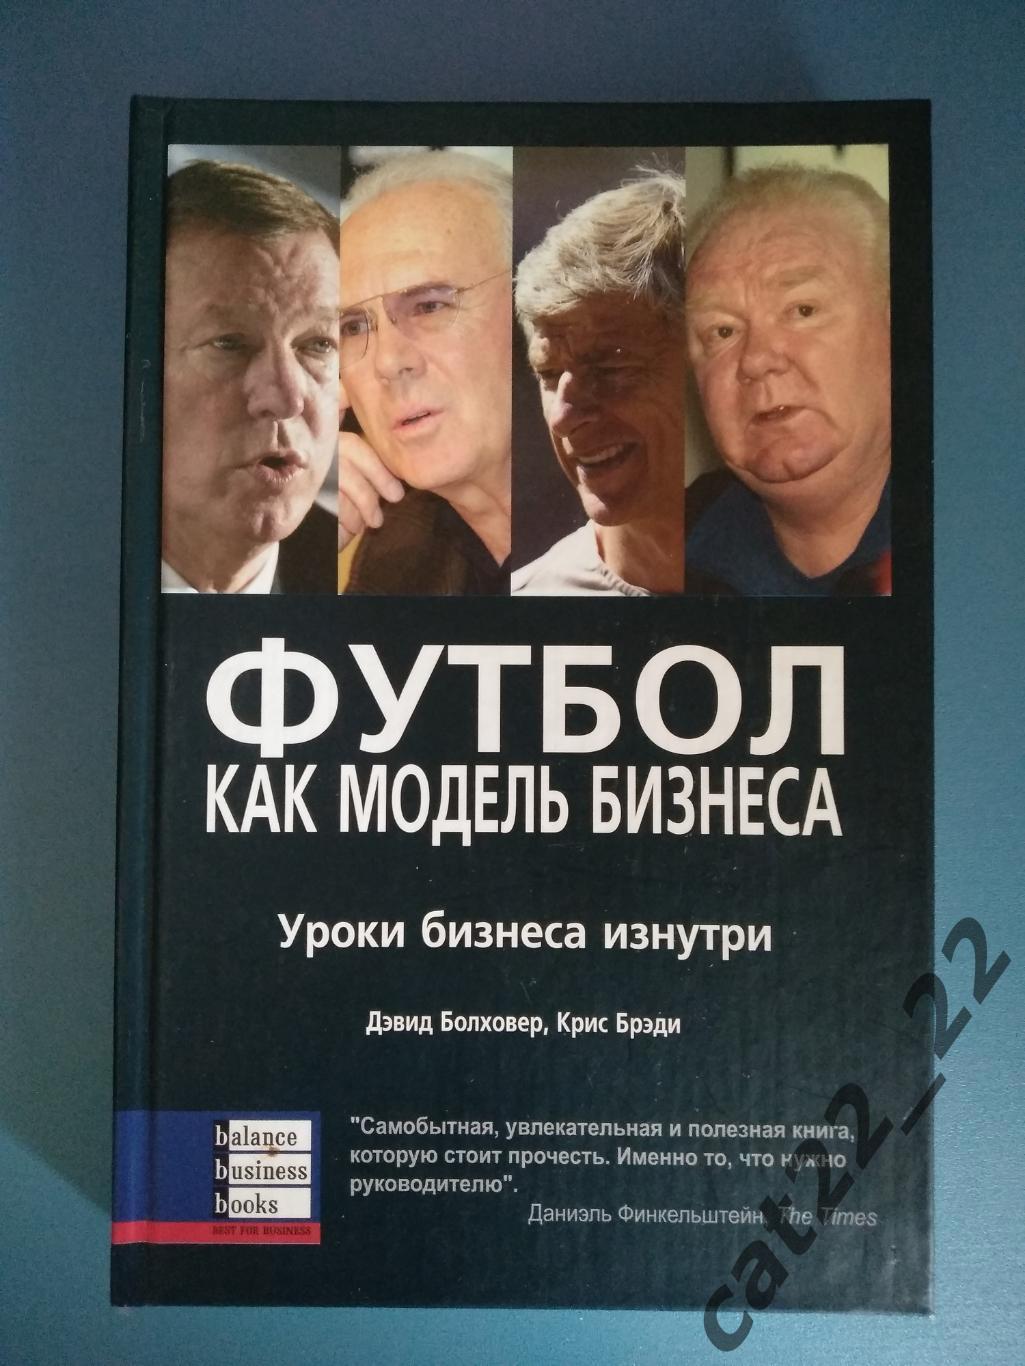 Первое издание!Книга: Футбол. Уроки бизнеса изнутри. Днепропетровск Украина 2005